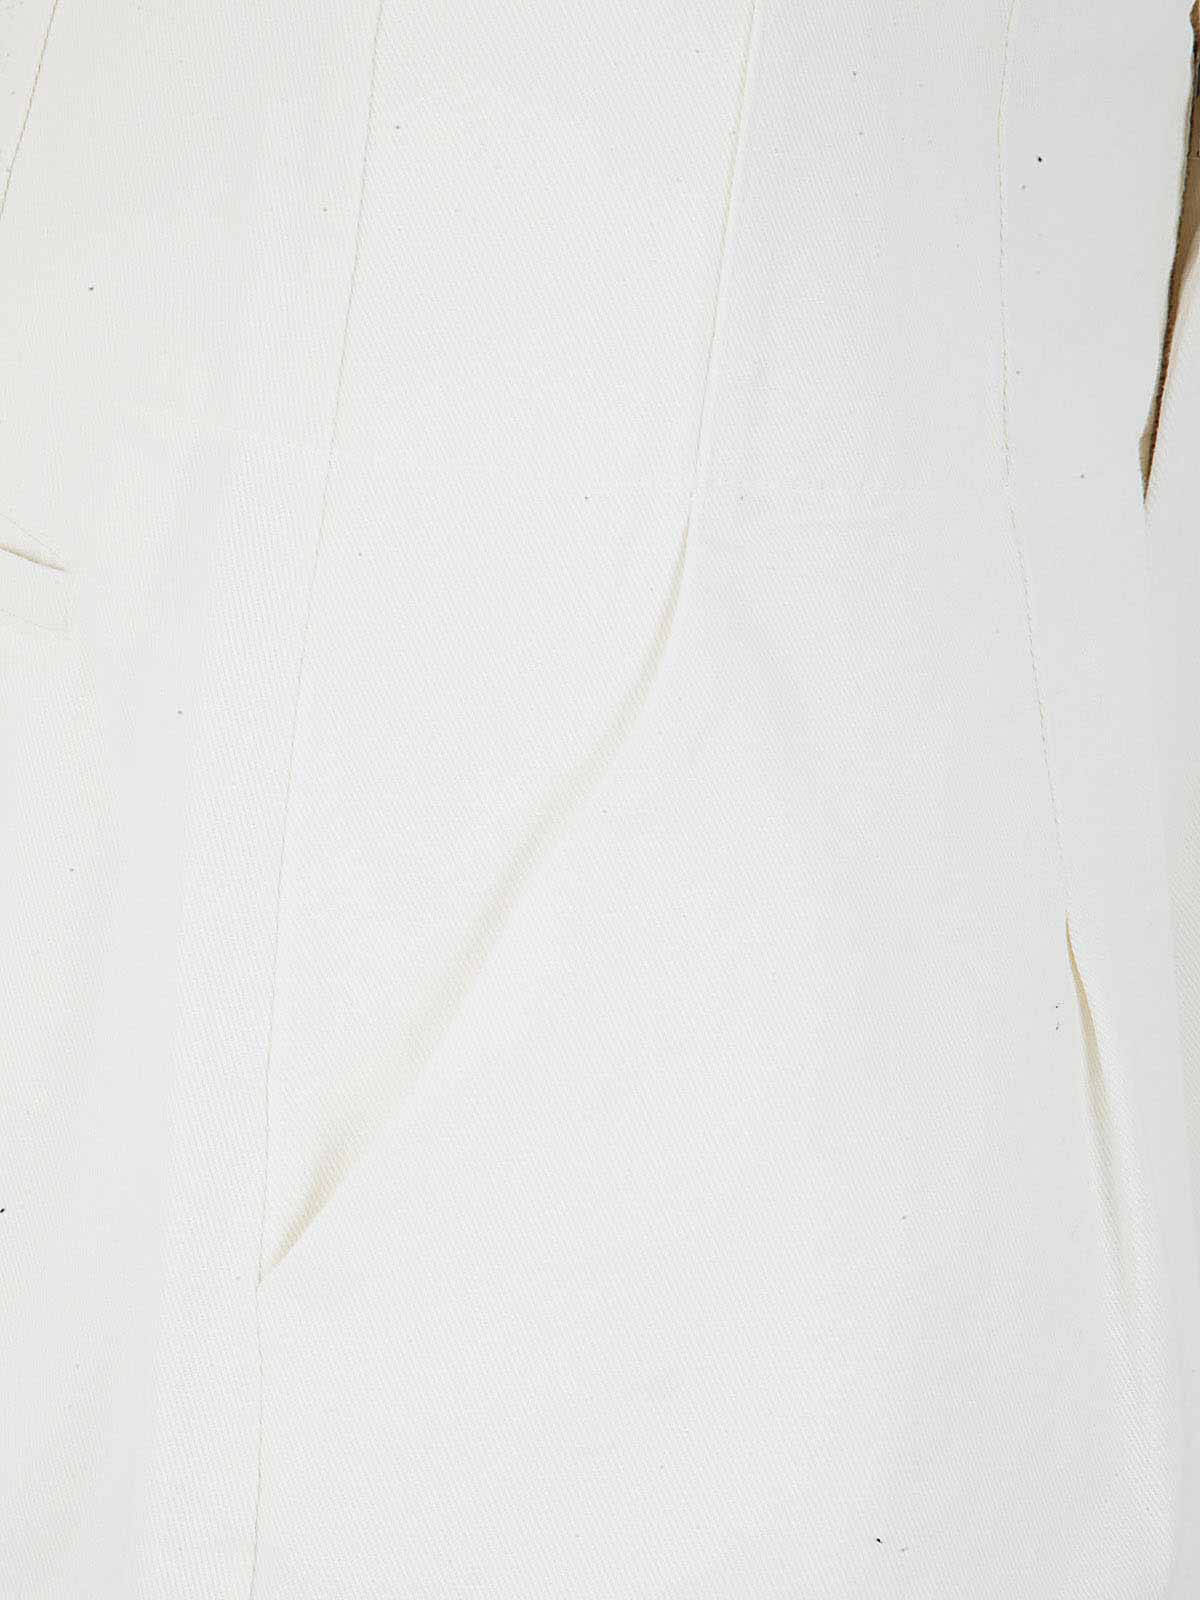 Shop Labo.art 50 Massaua Shorts In White